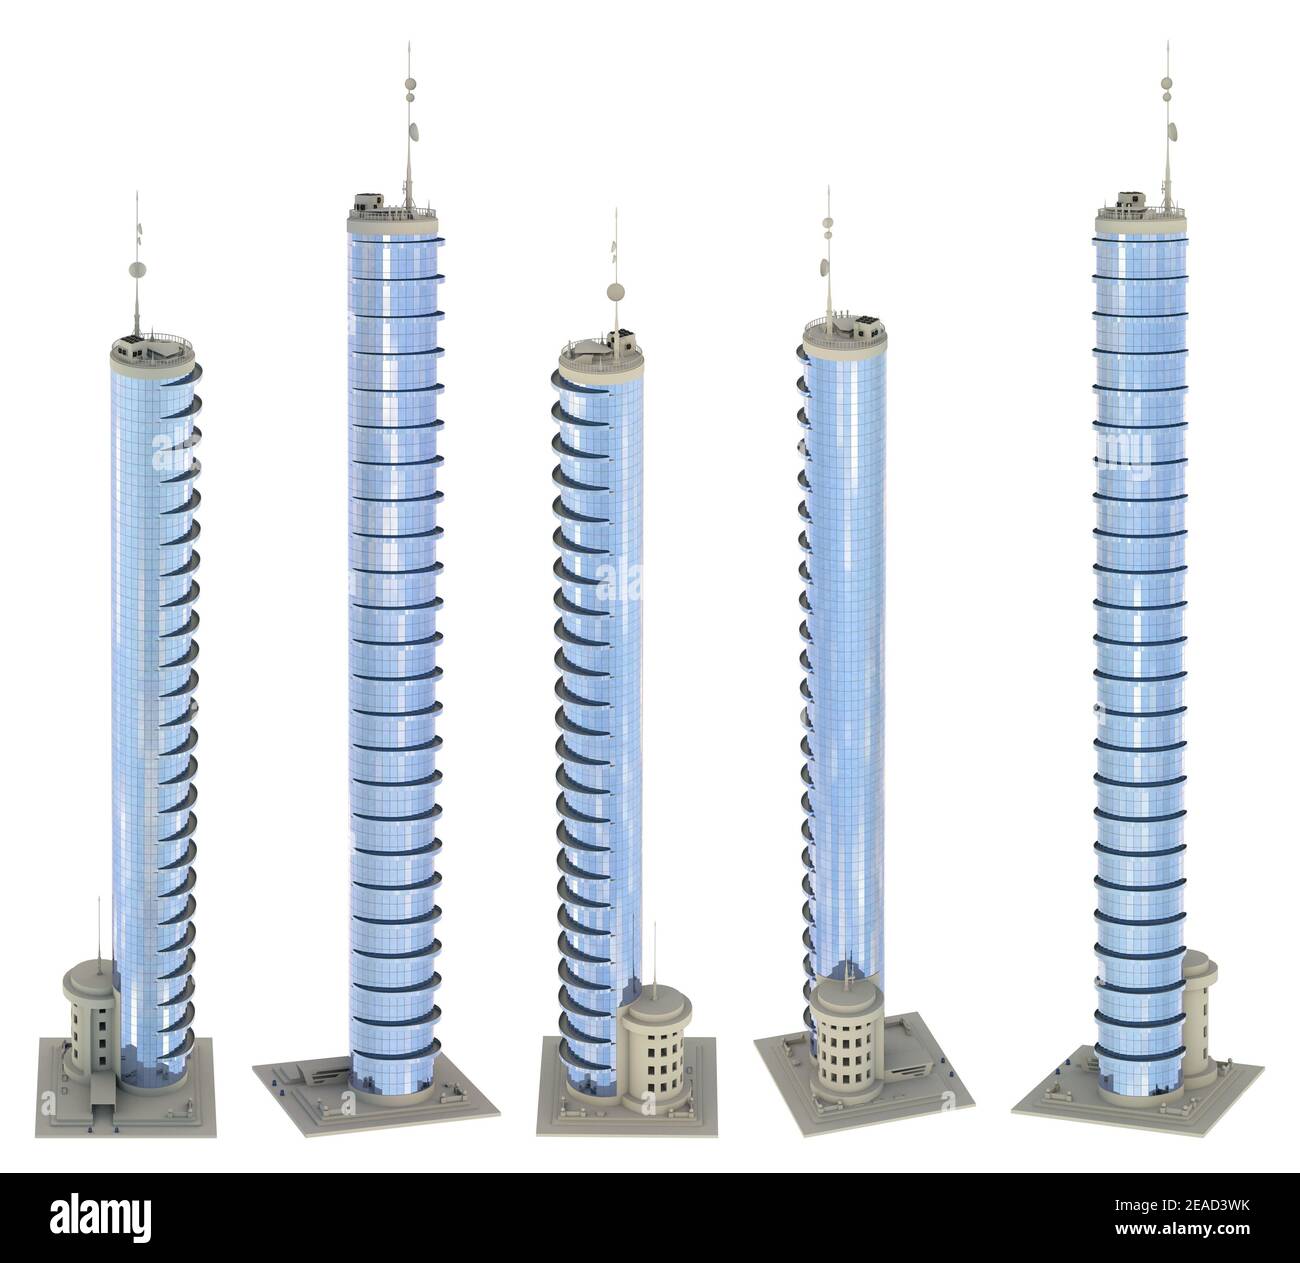 5 rendering di edifici di design immaginario con parcheggio in fondo con riflessi cielo nuvoloso - isolato, vista alta, illustrazione 3d dei grattacieli Foto Stock